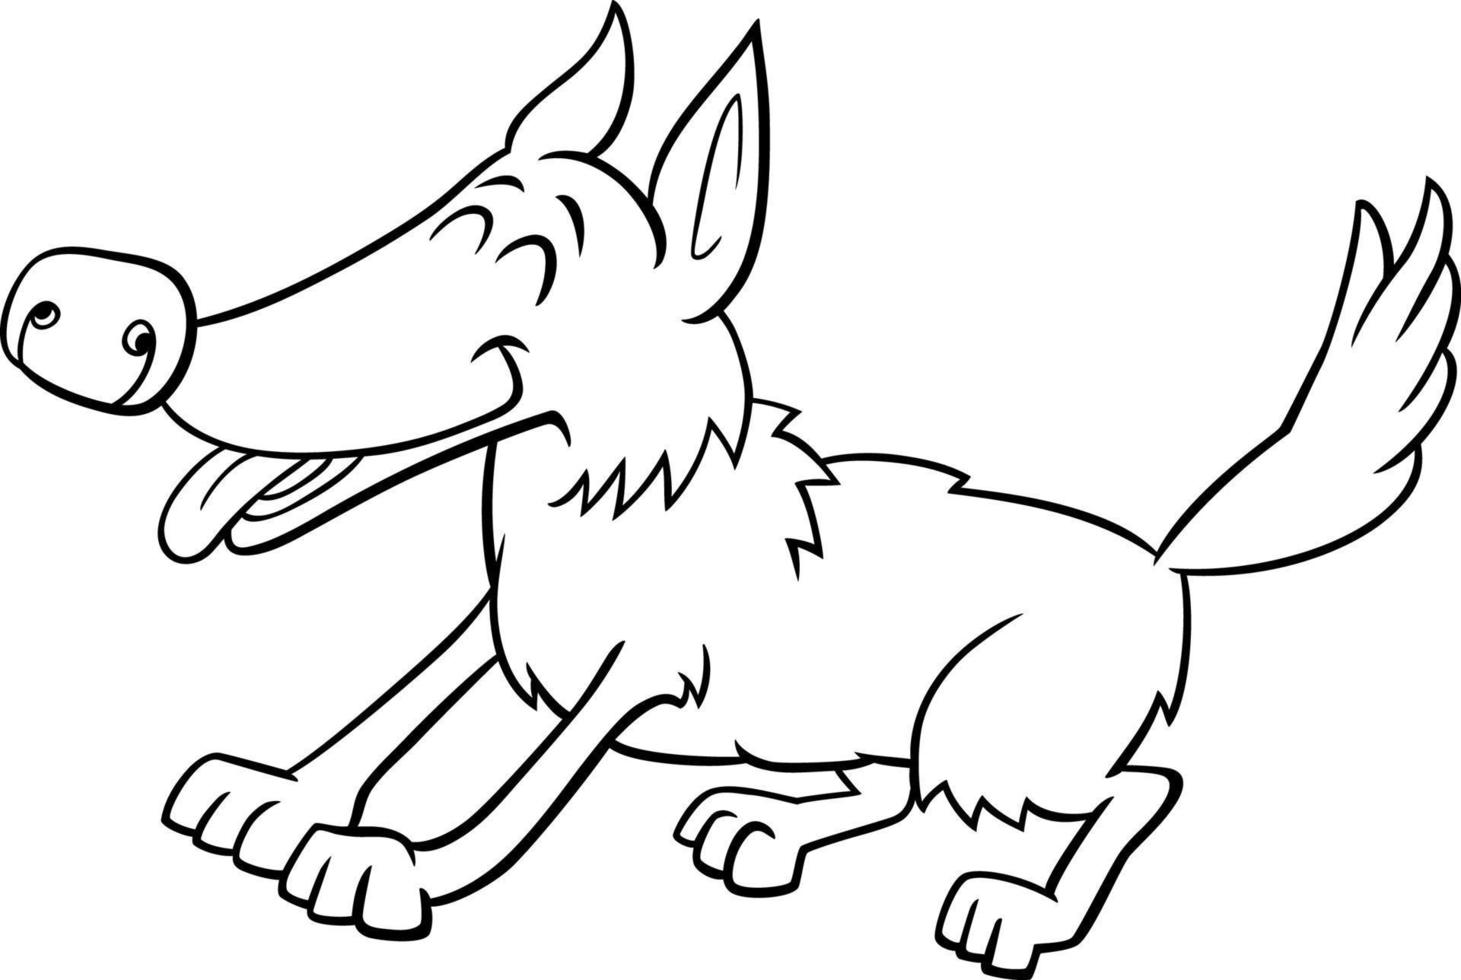 desenho de personagem animal cão brincalhão dos desenhos animados para colorir vetor